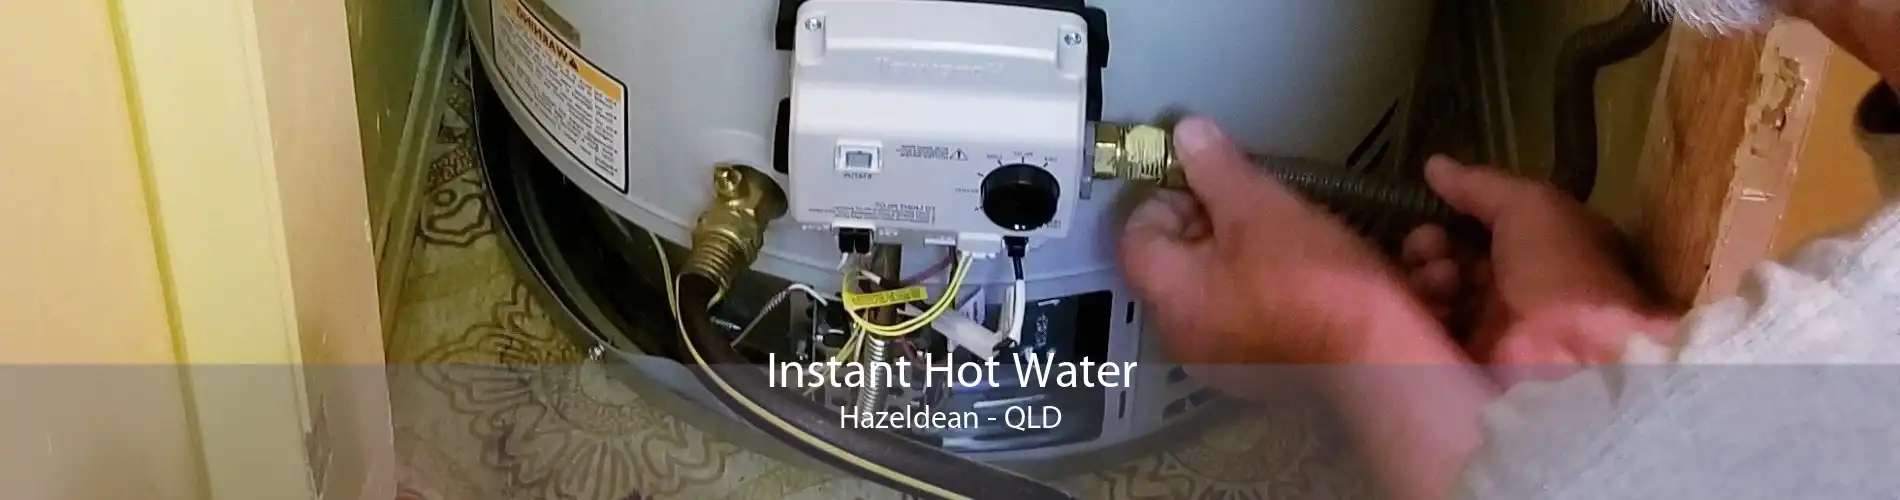 Instant Hot Water Hazeldean - QLD